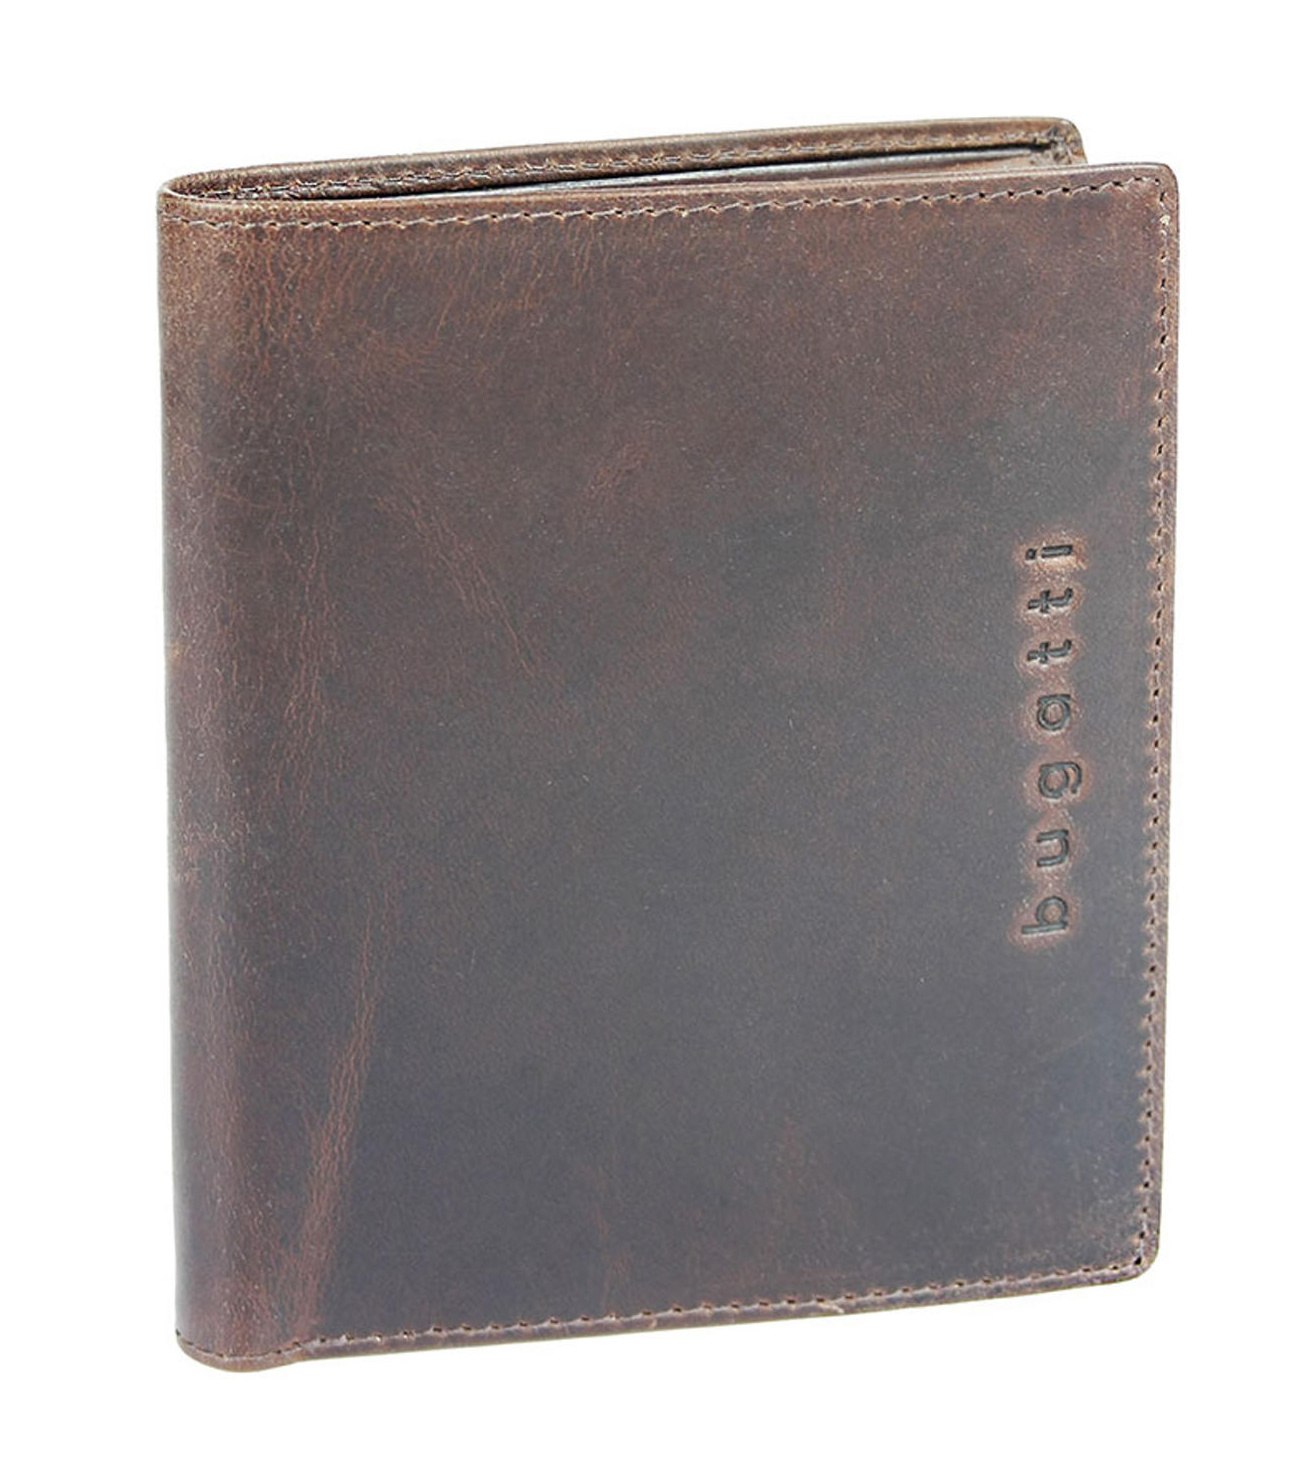 Pánská peněženka Bugatti Romano flap 493995-02 hnědá